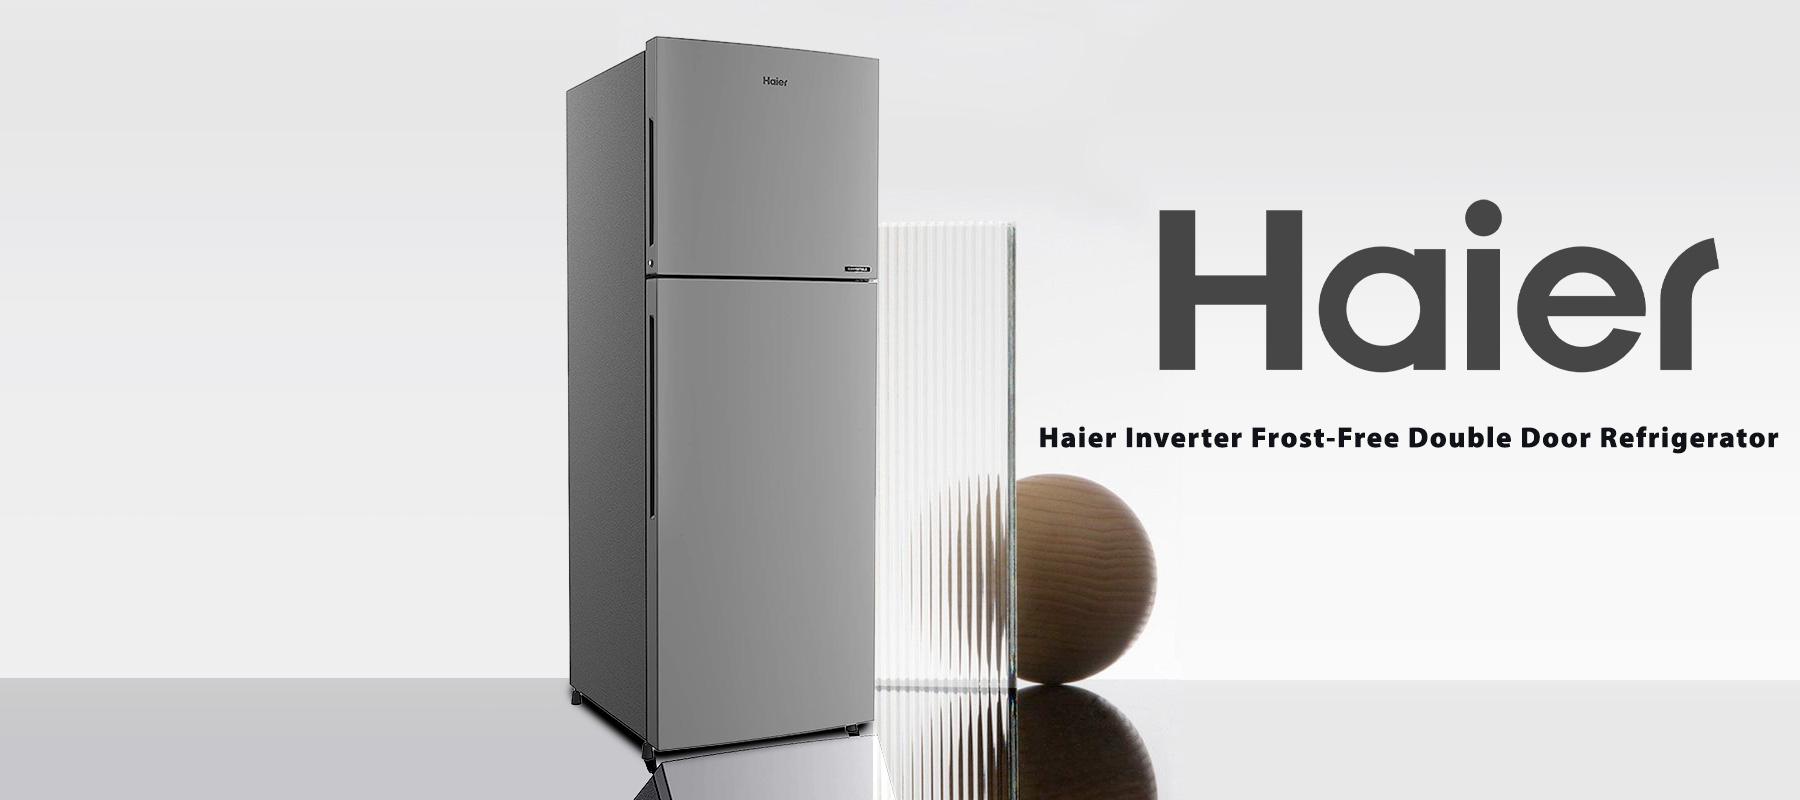 Haier-Inverter-Frost-Free-Double-Door-Refrigerator.jpg